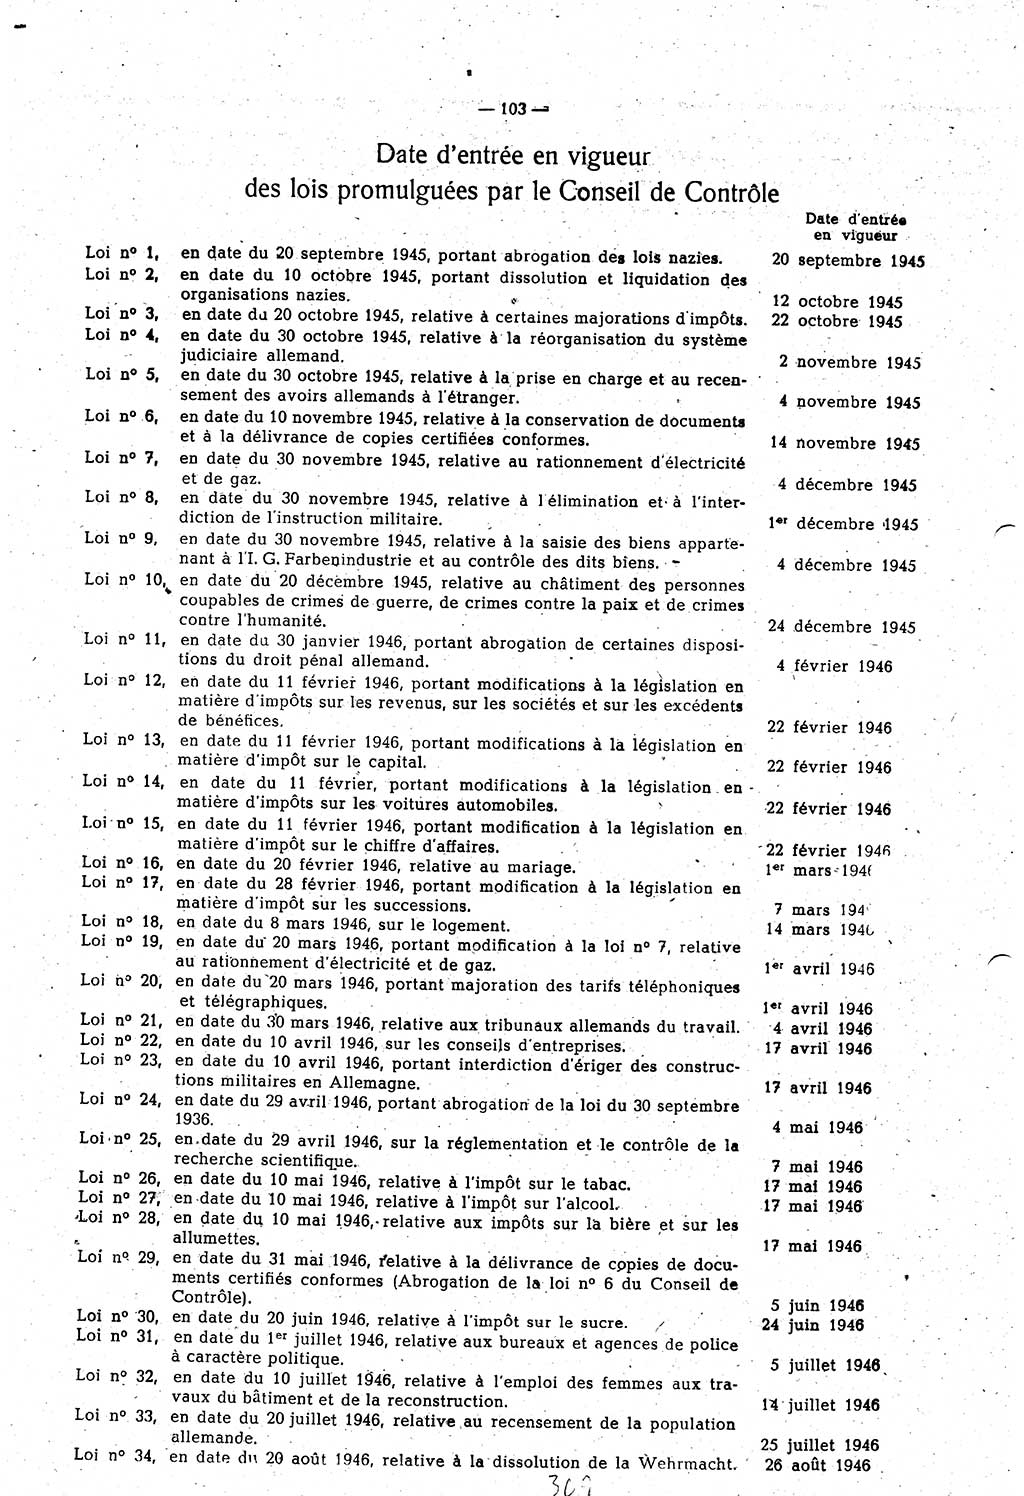 Amtsblatt des Kontrollrats (ABlKR) in Deutschland 1948, Seite 309/1 (ABlKR Dtl. 1948, S. 309/1)